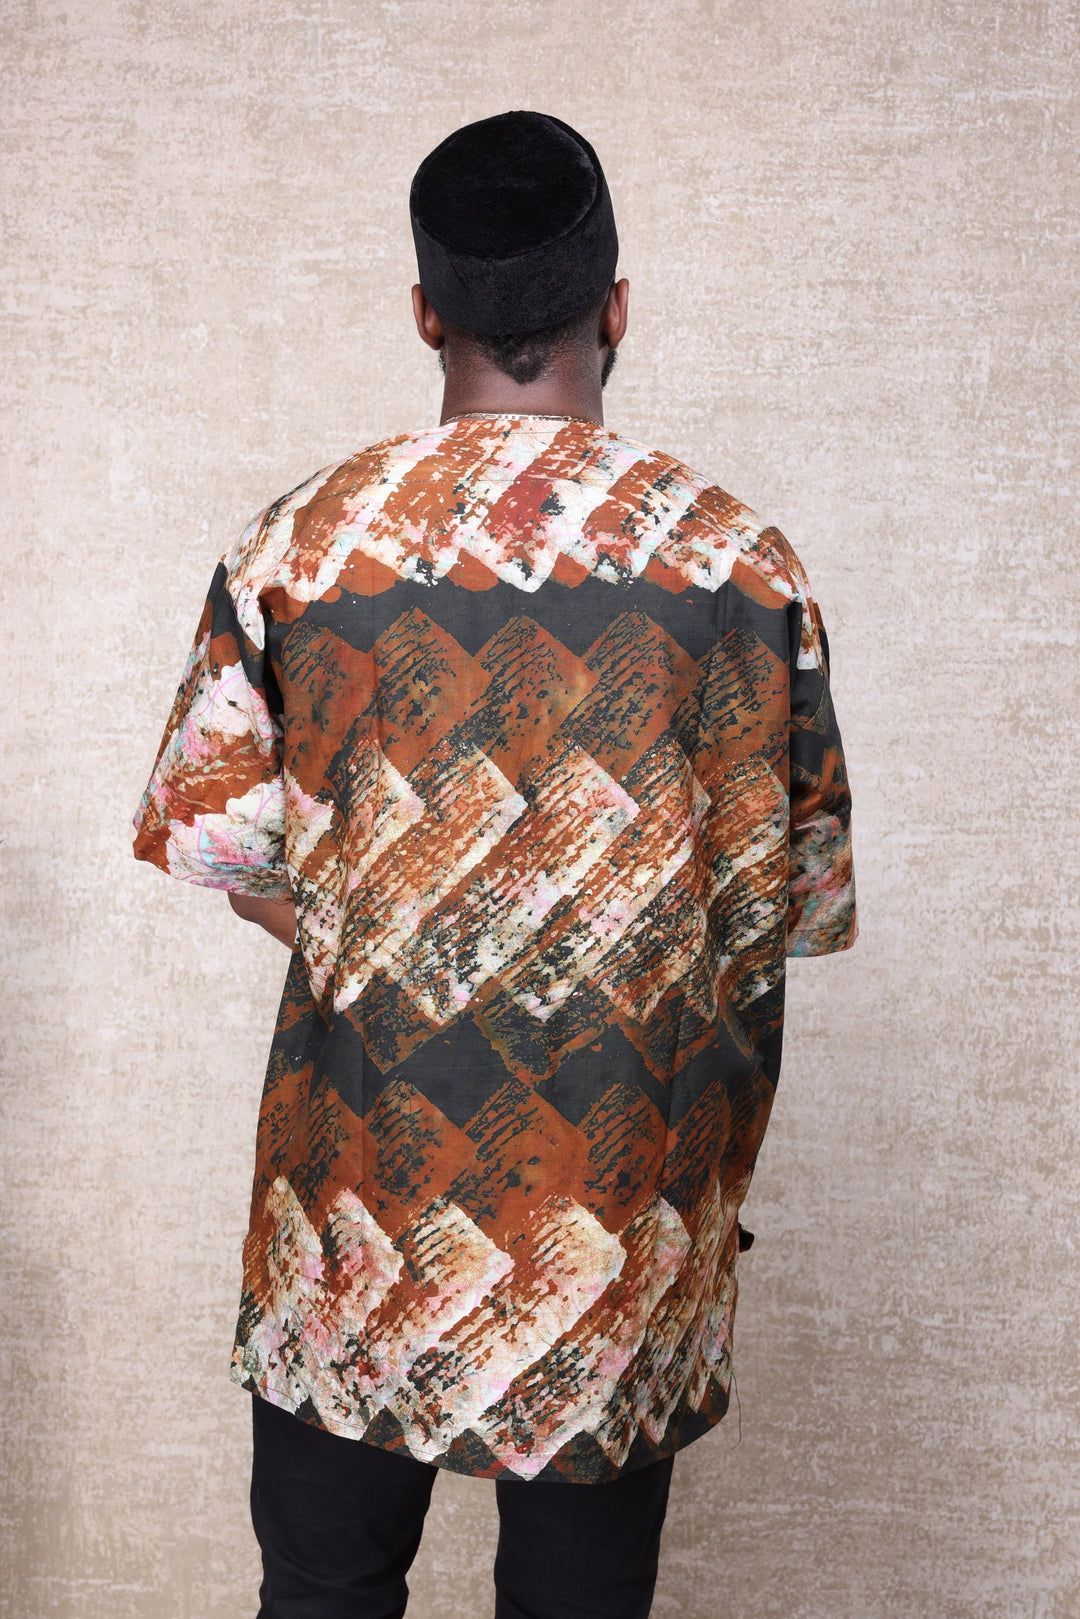 Tribal batik men shirt.